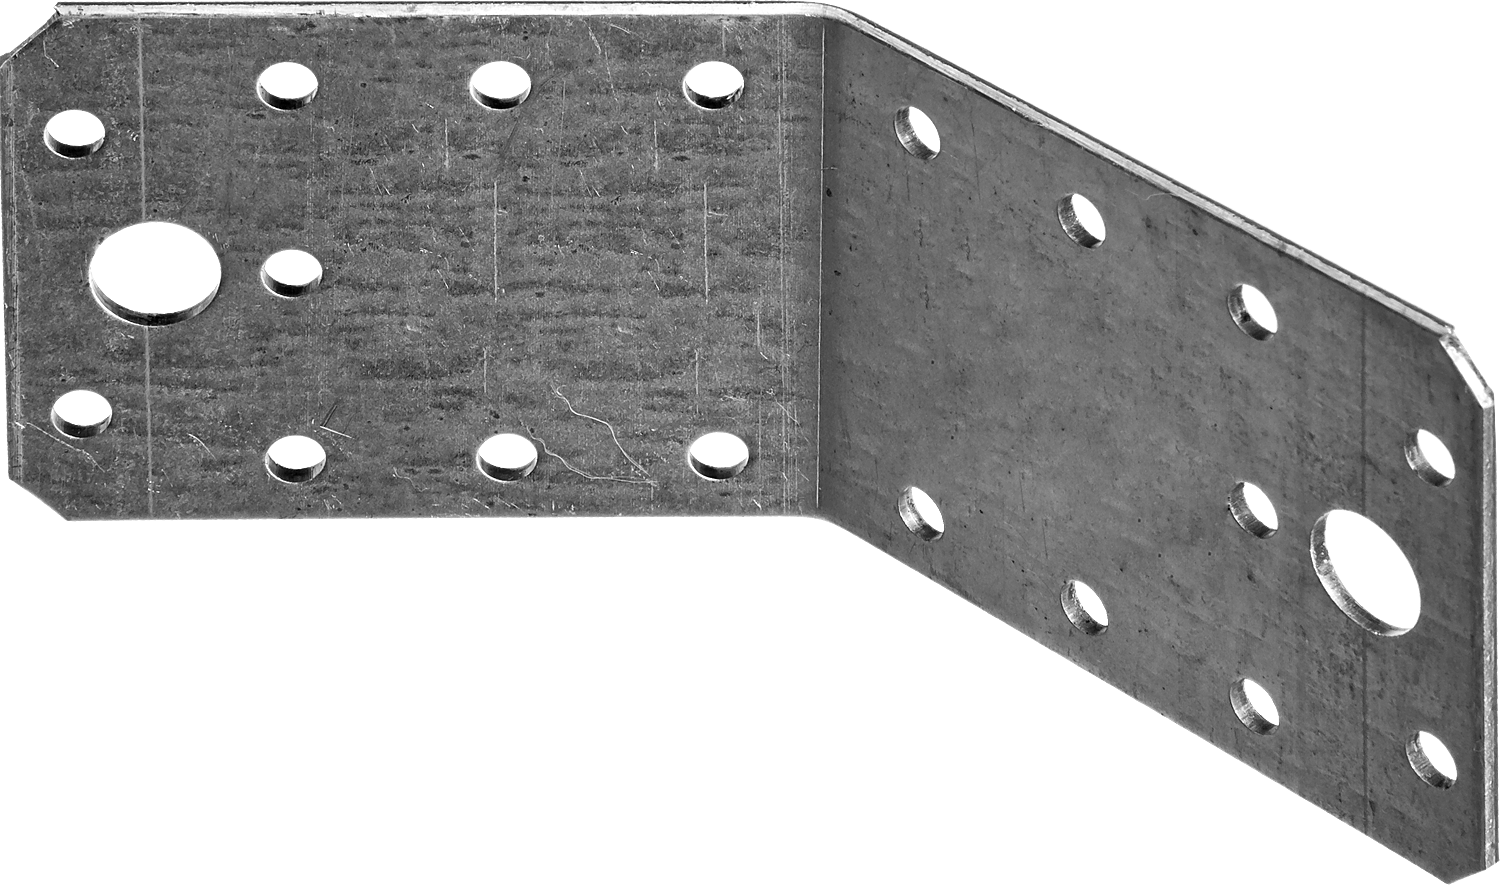 Уголок крепежный ЗУБР МАСТЕР УК-135-2.0, 5.5 смx7 смx7 см, 2 мм, 1 шт. (310136-55-070)